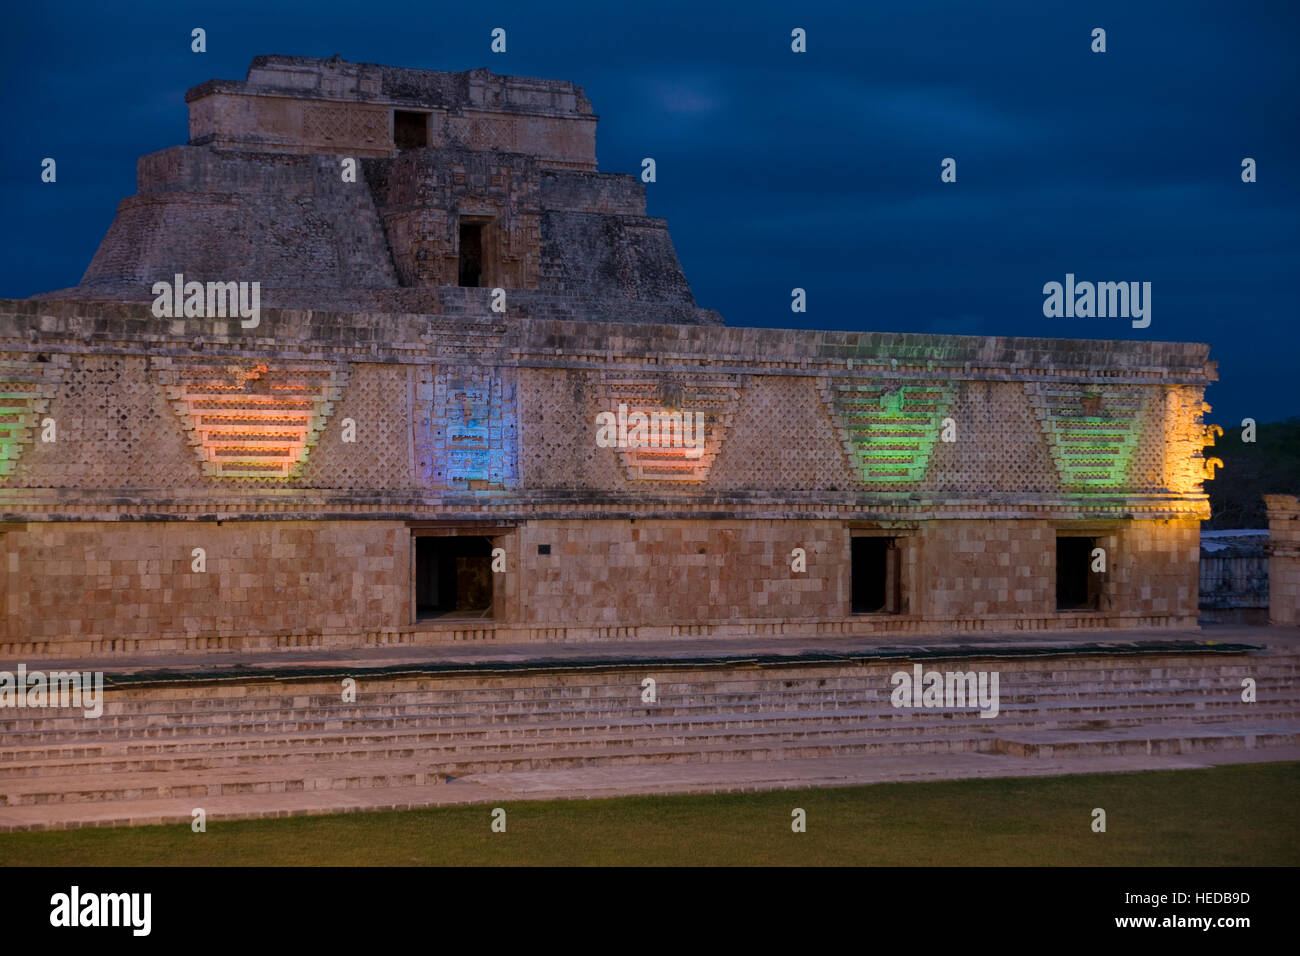 Uxmal, ancient Maya city, historic site at dawn, Yucatan, Mexico Stock Photo